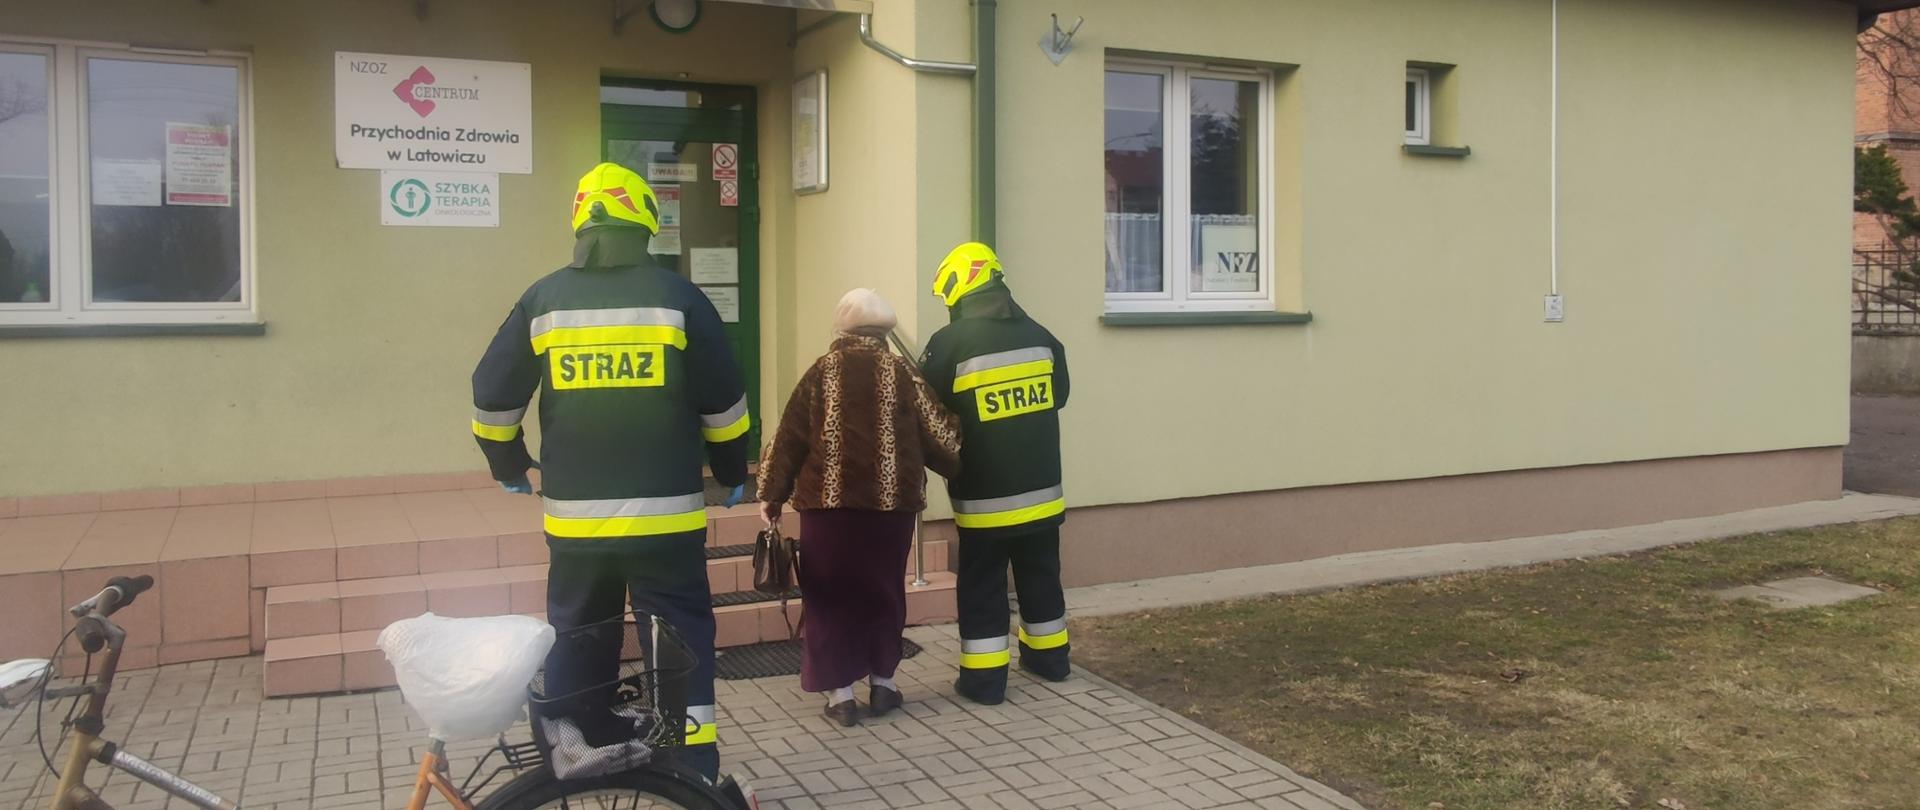 Strażacy podprowadzają starszą kobietę na szczepienie do przychodni